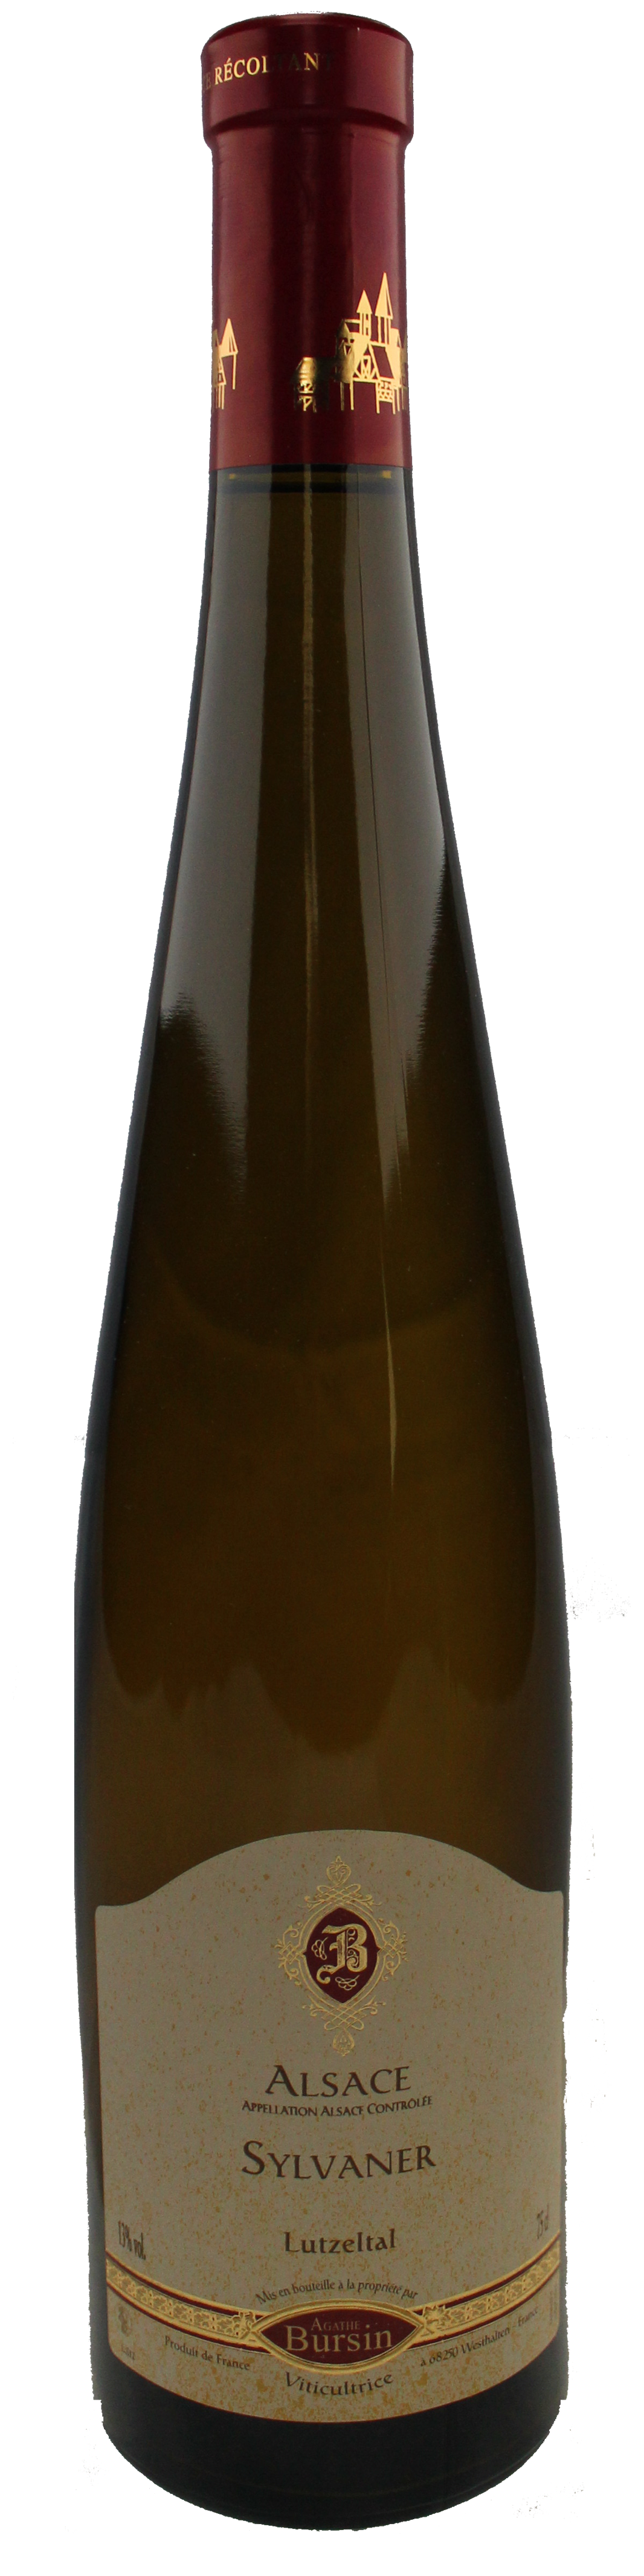 Bottle shot of 2014 Sylvaner Lutzeltal